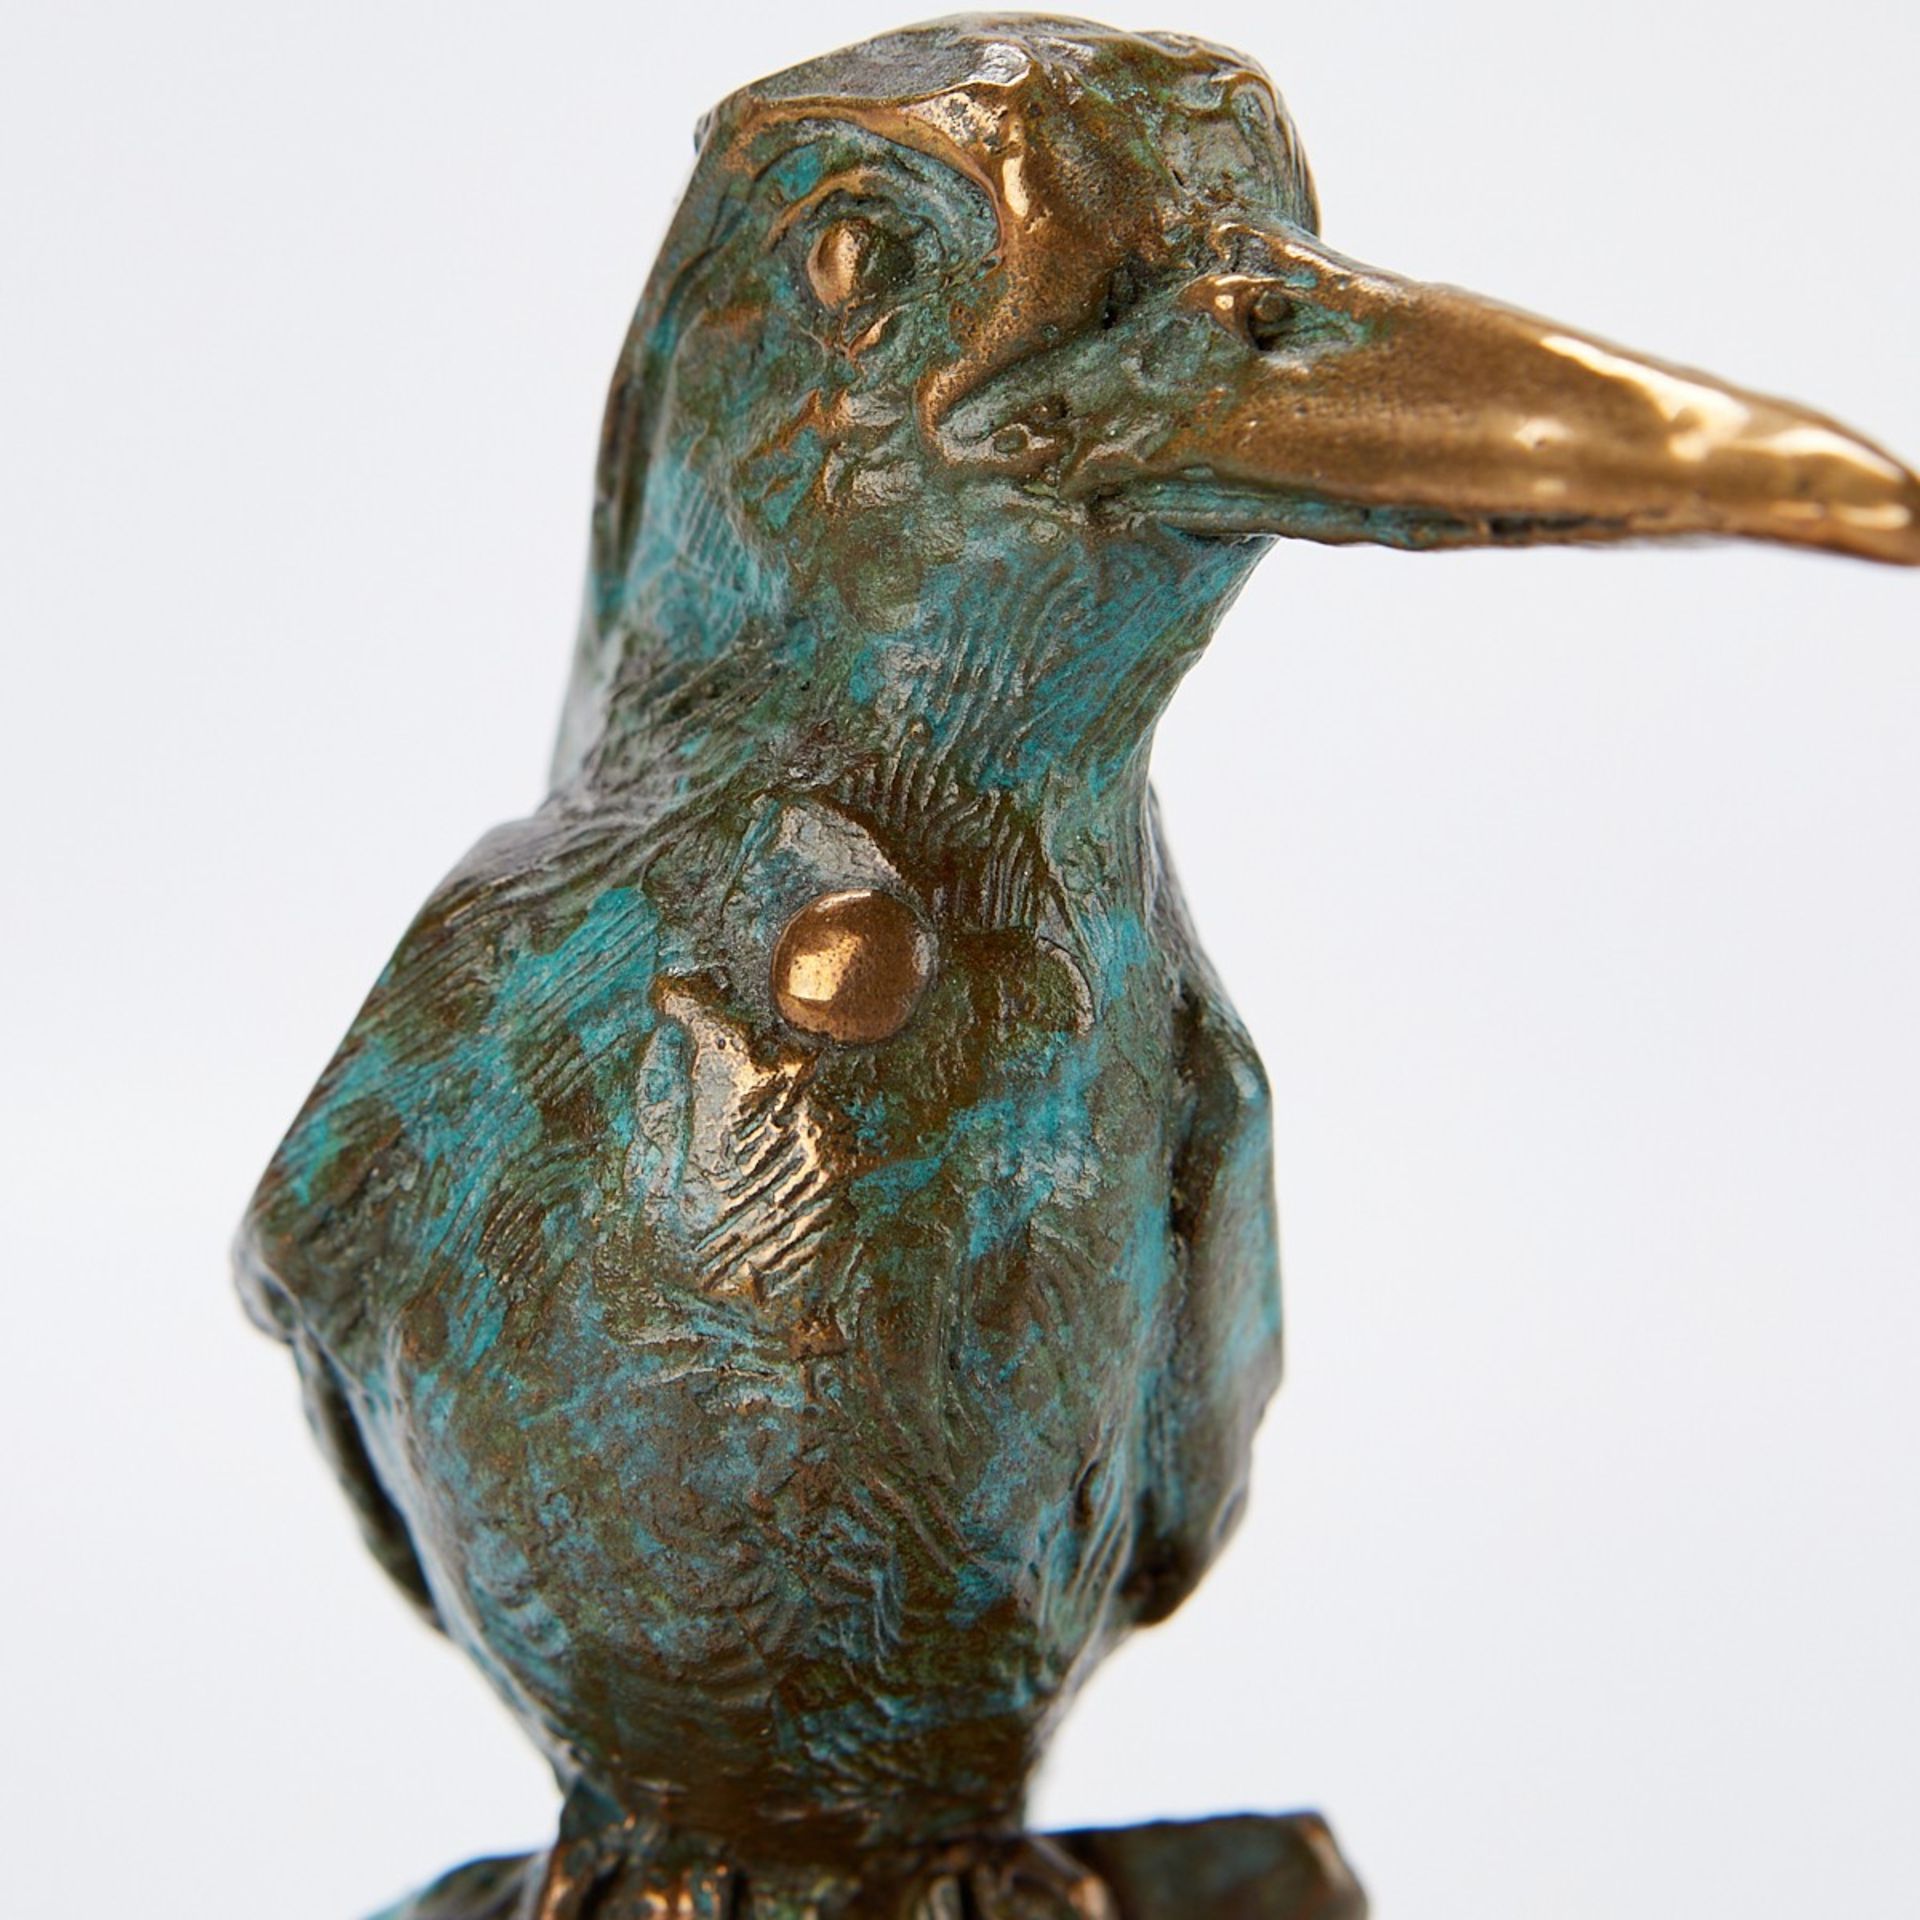 2 Bronze Sculptures - Bird & Chameleon - Image 13 of 13